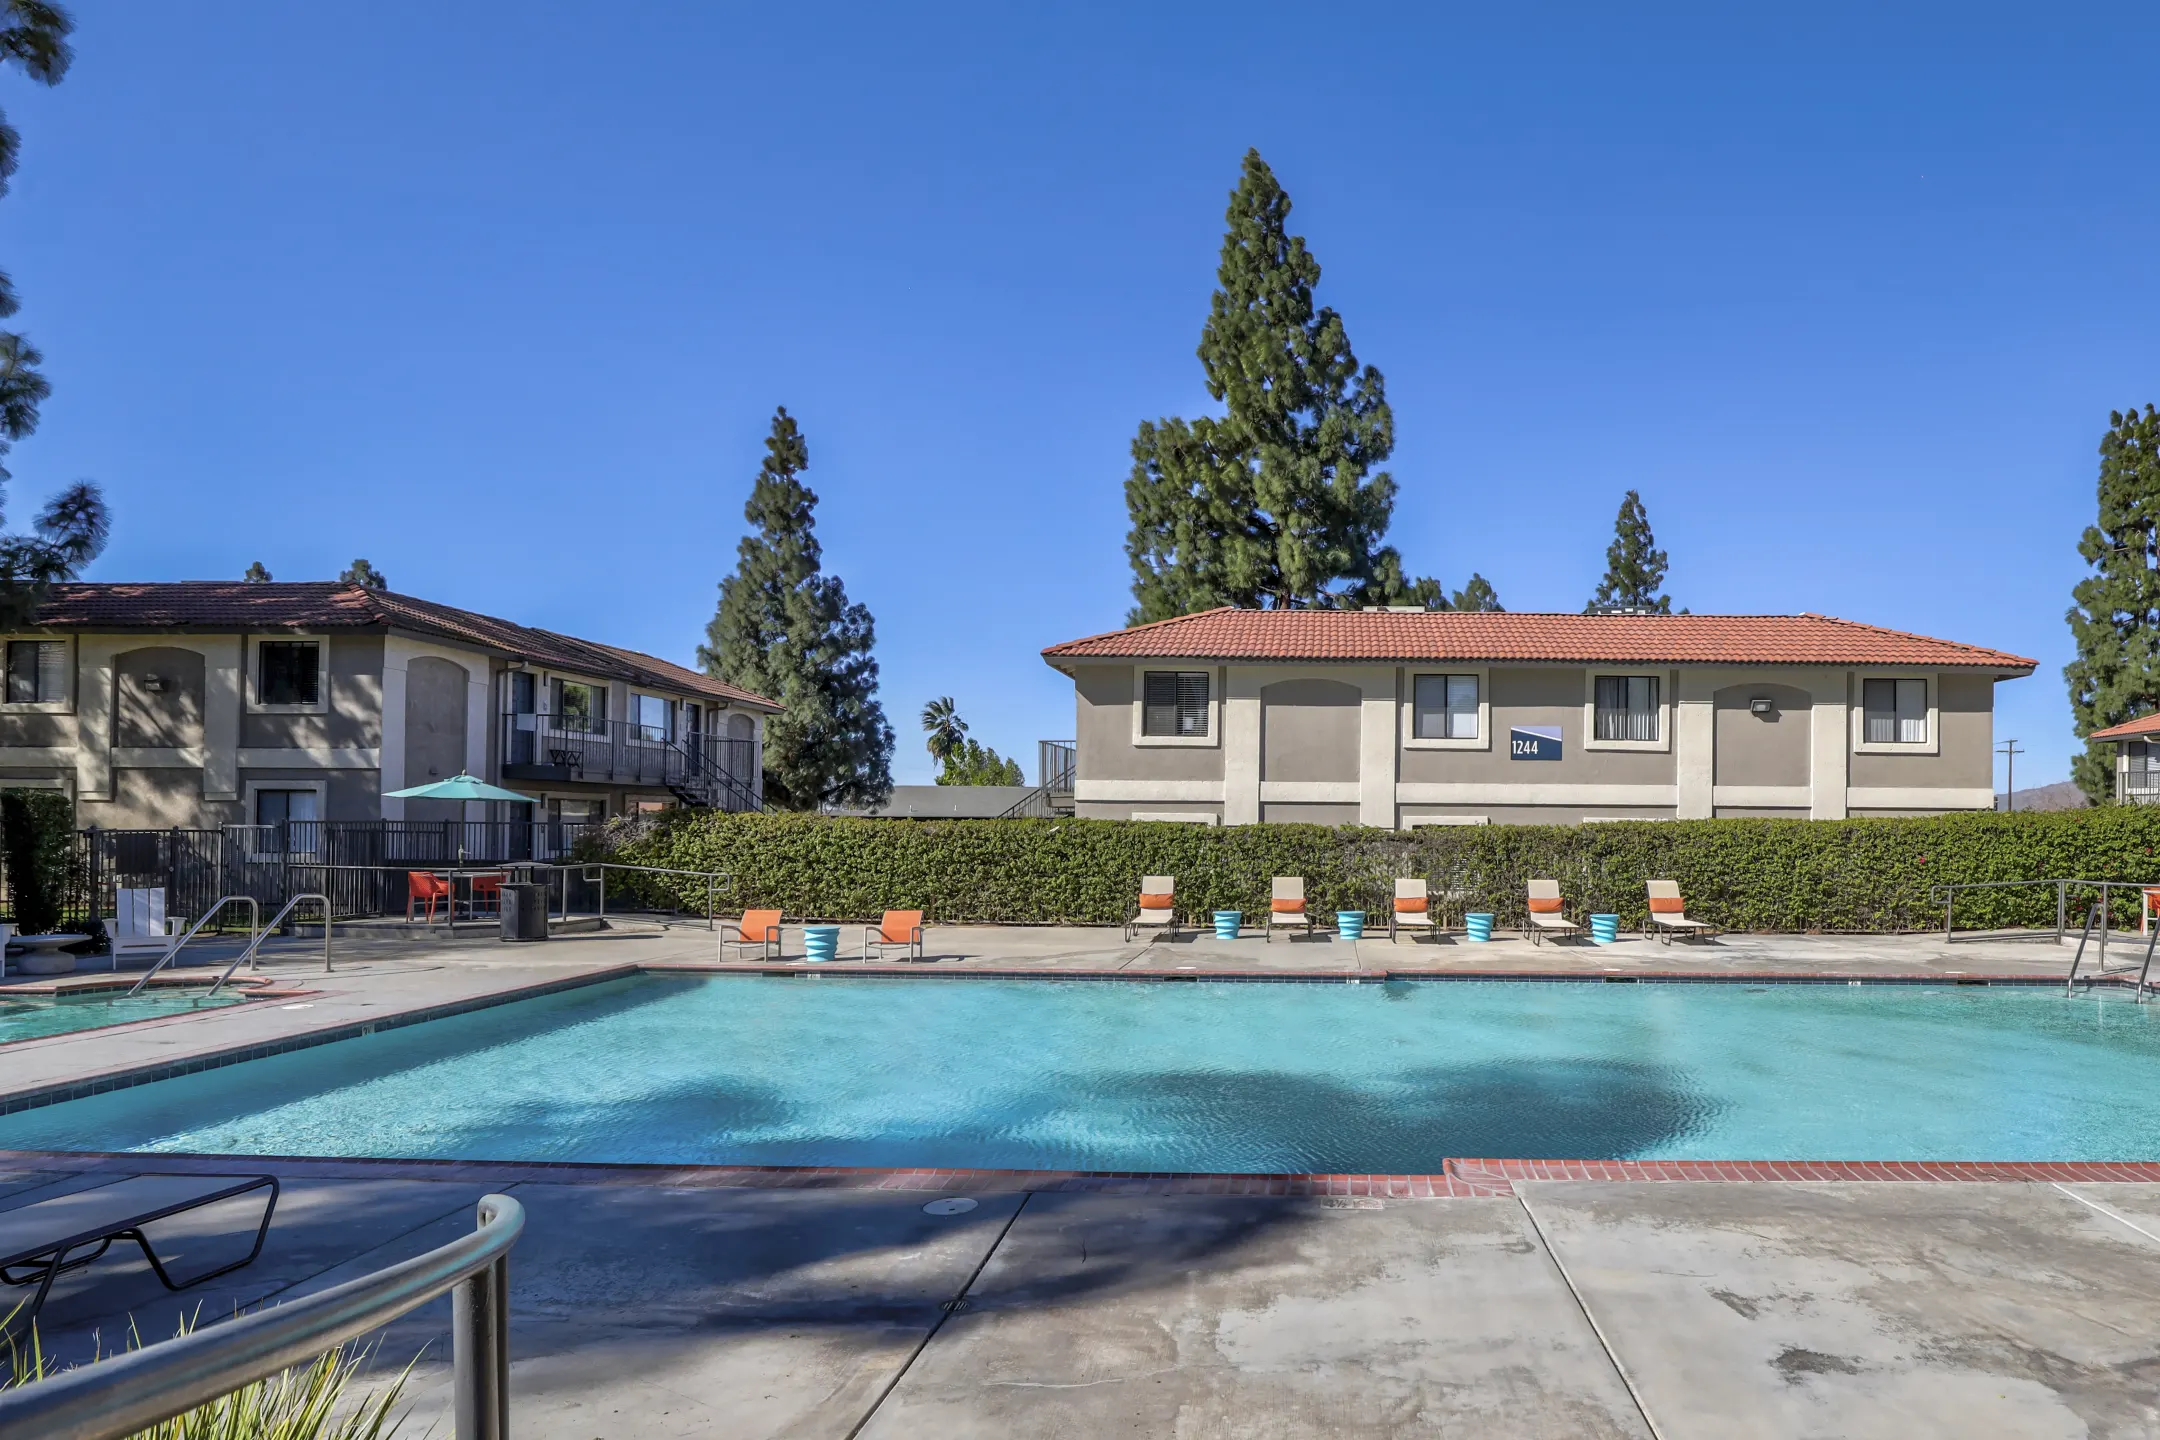 Pool - Berkdale Apartments - Riverside, CA